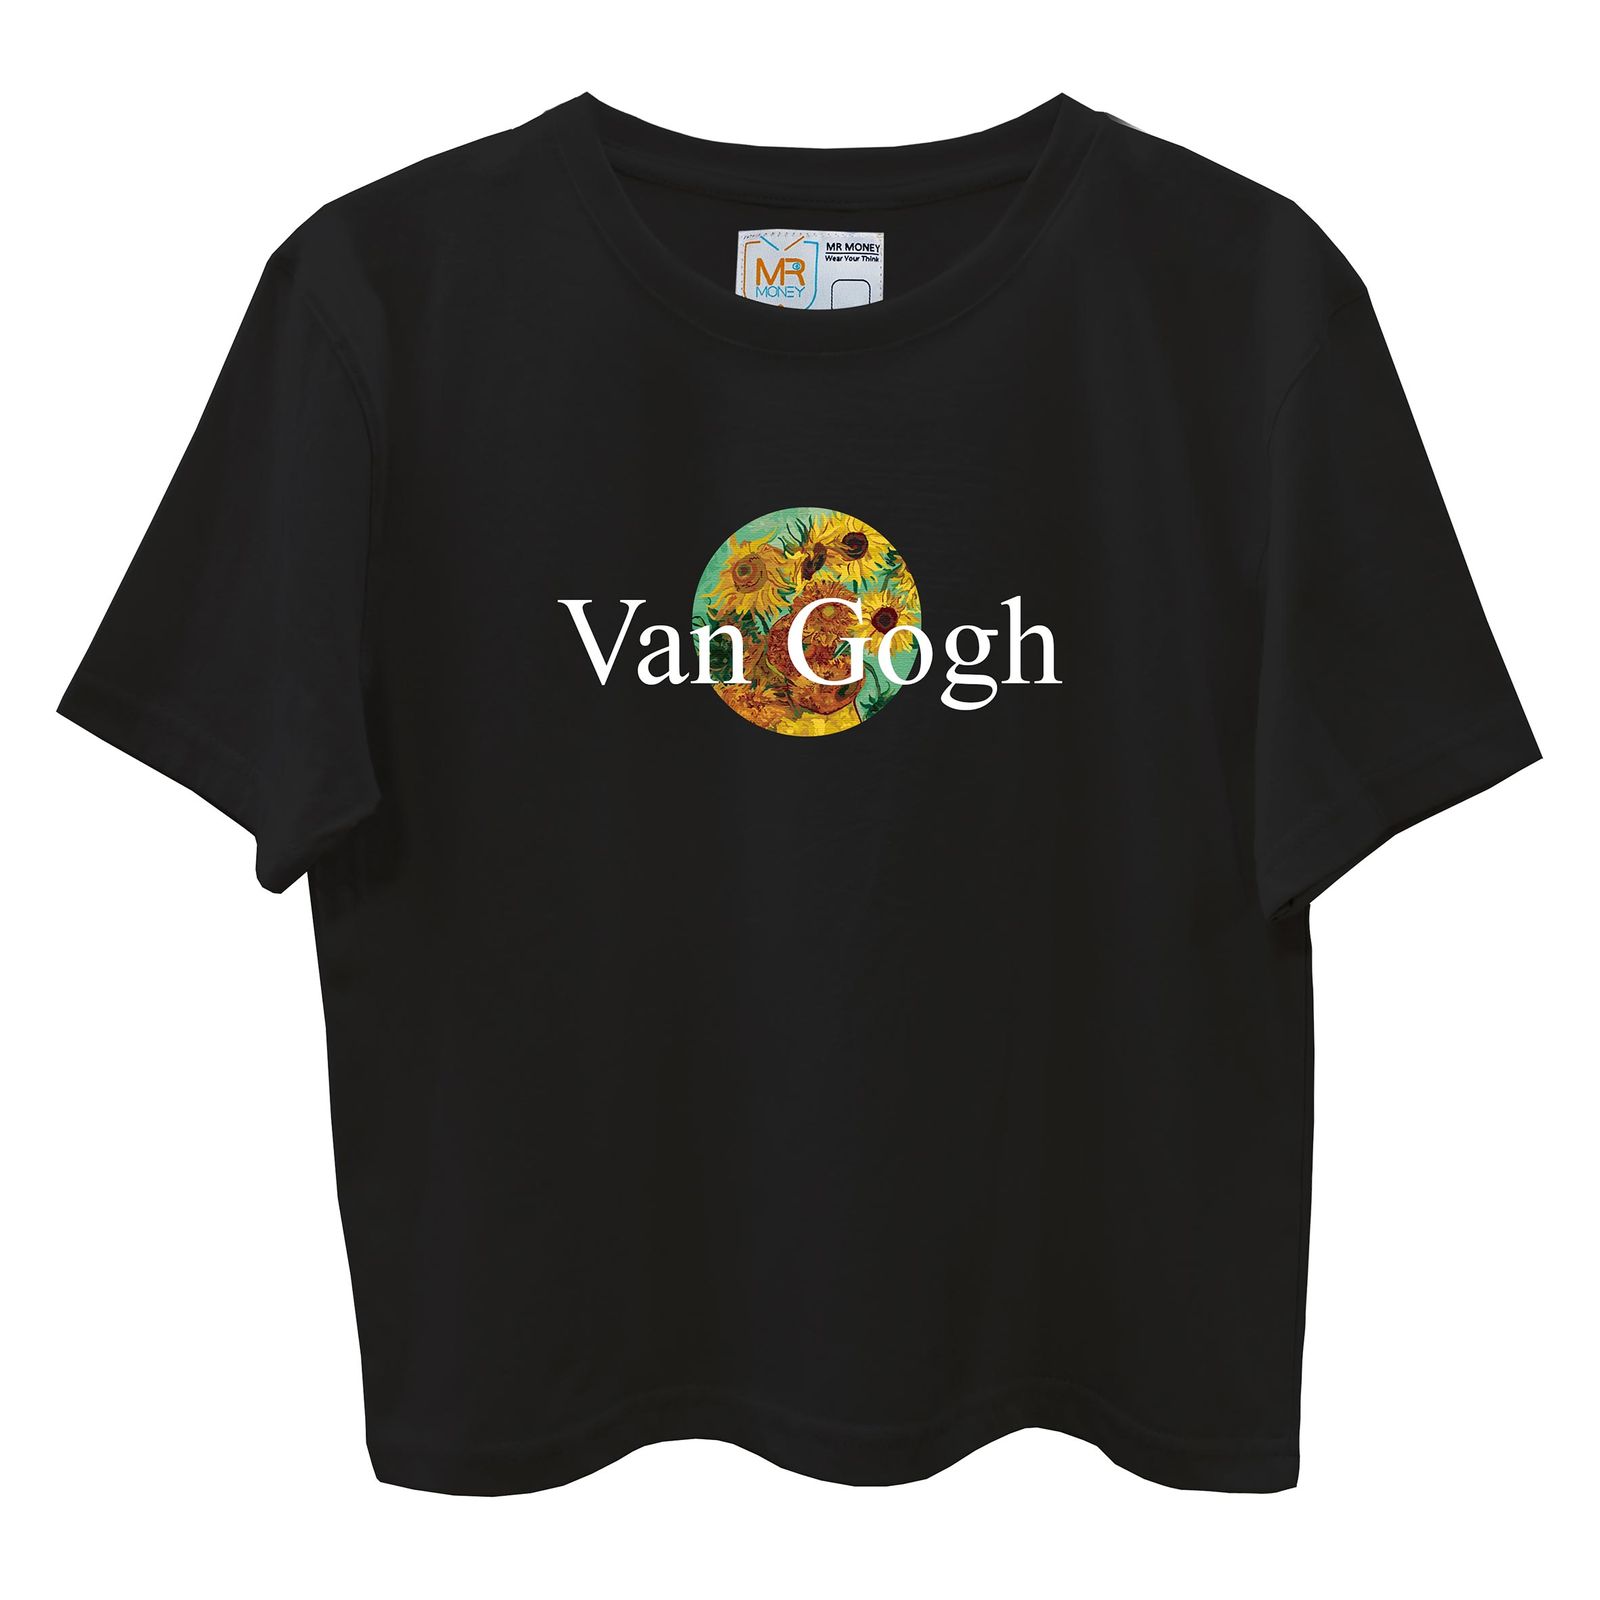 تی شرت آستین کوتاه زنانه مسترمانی مدل گل آفتابگردون ونگوگ 402 -  - 1